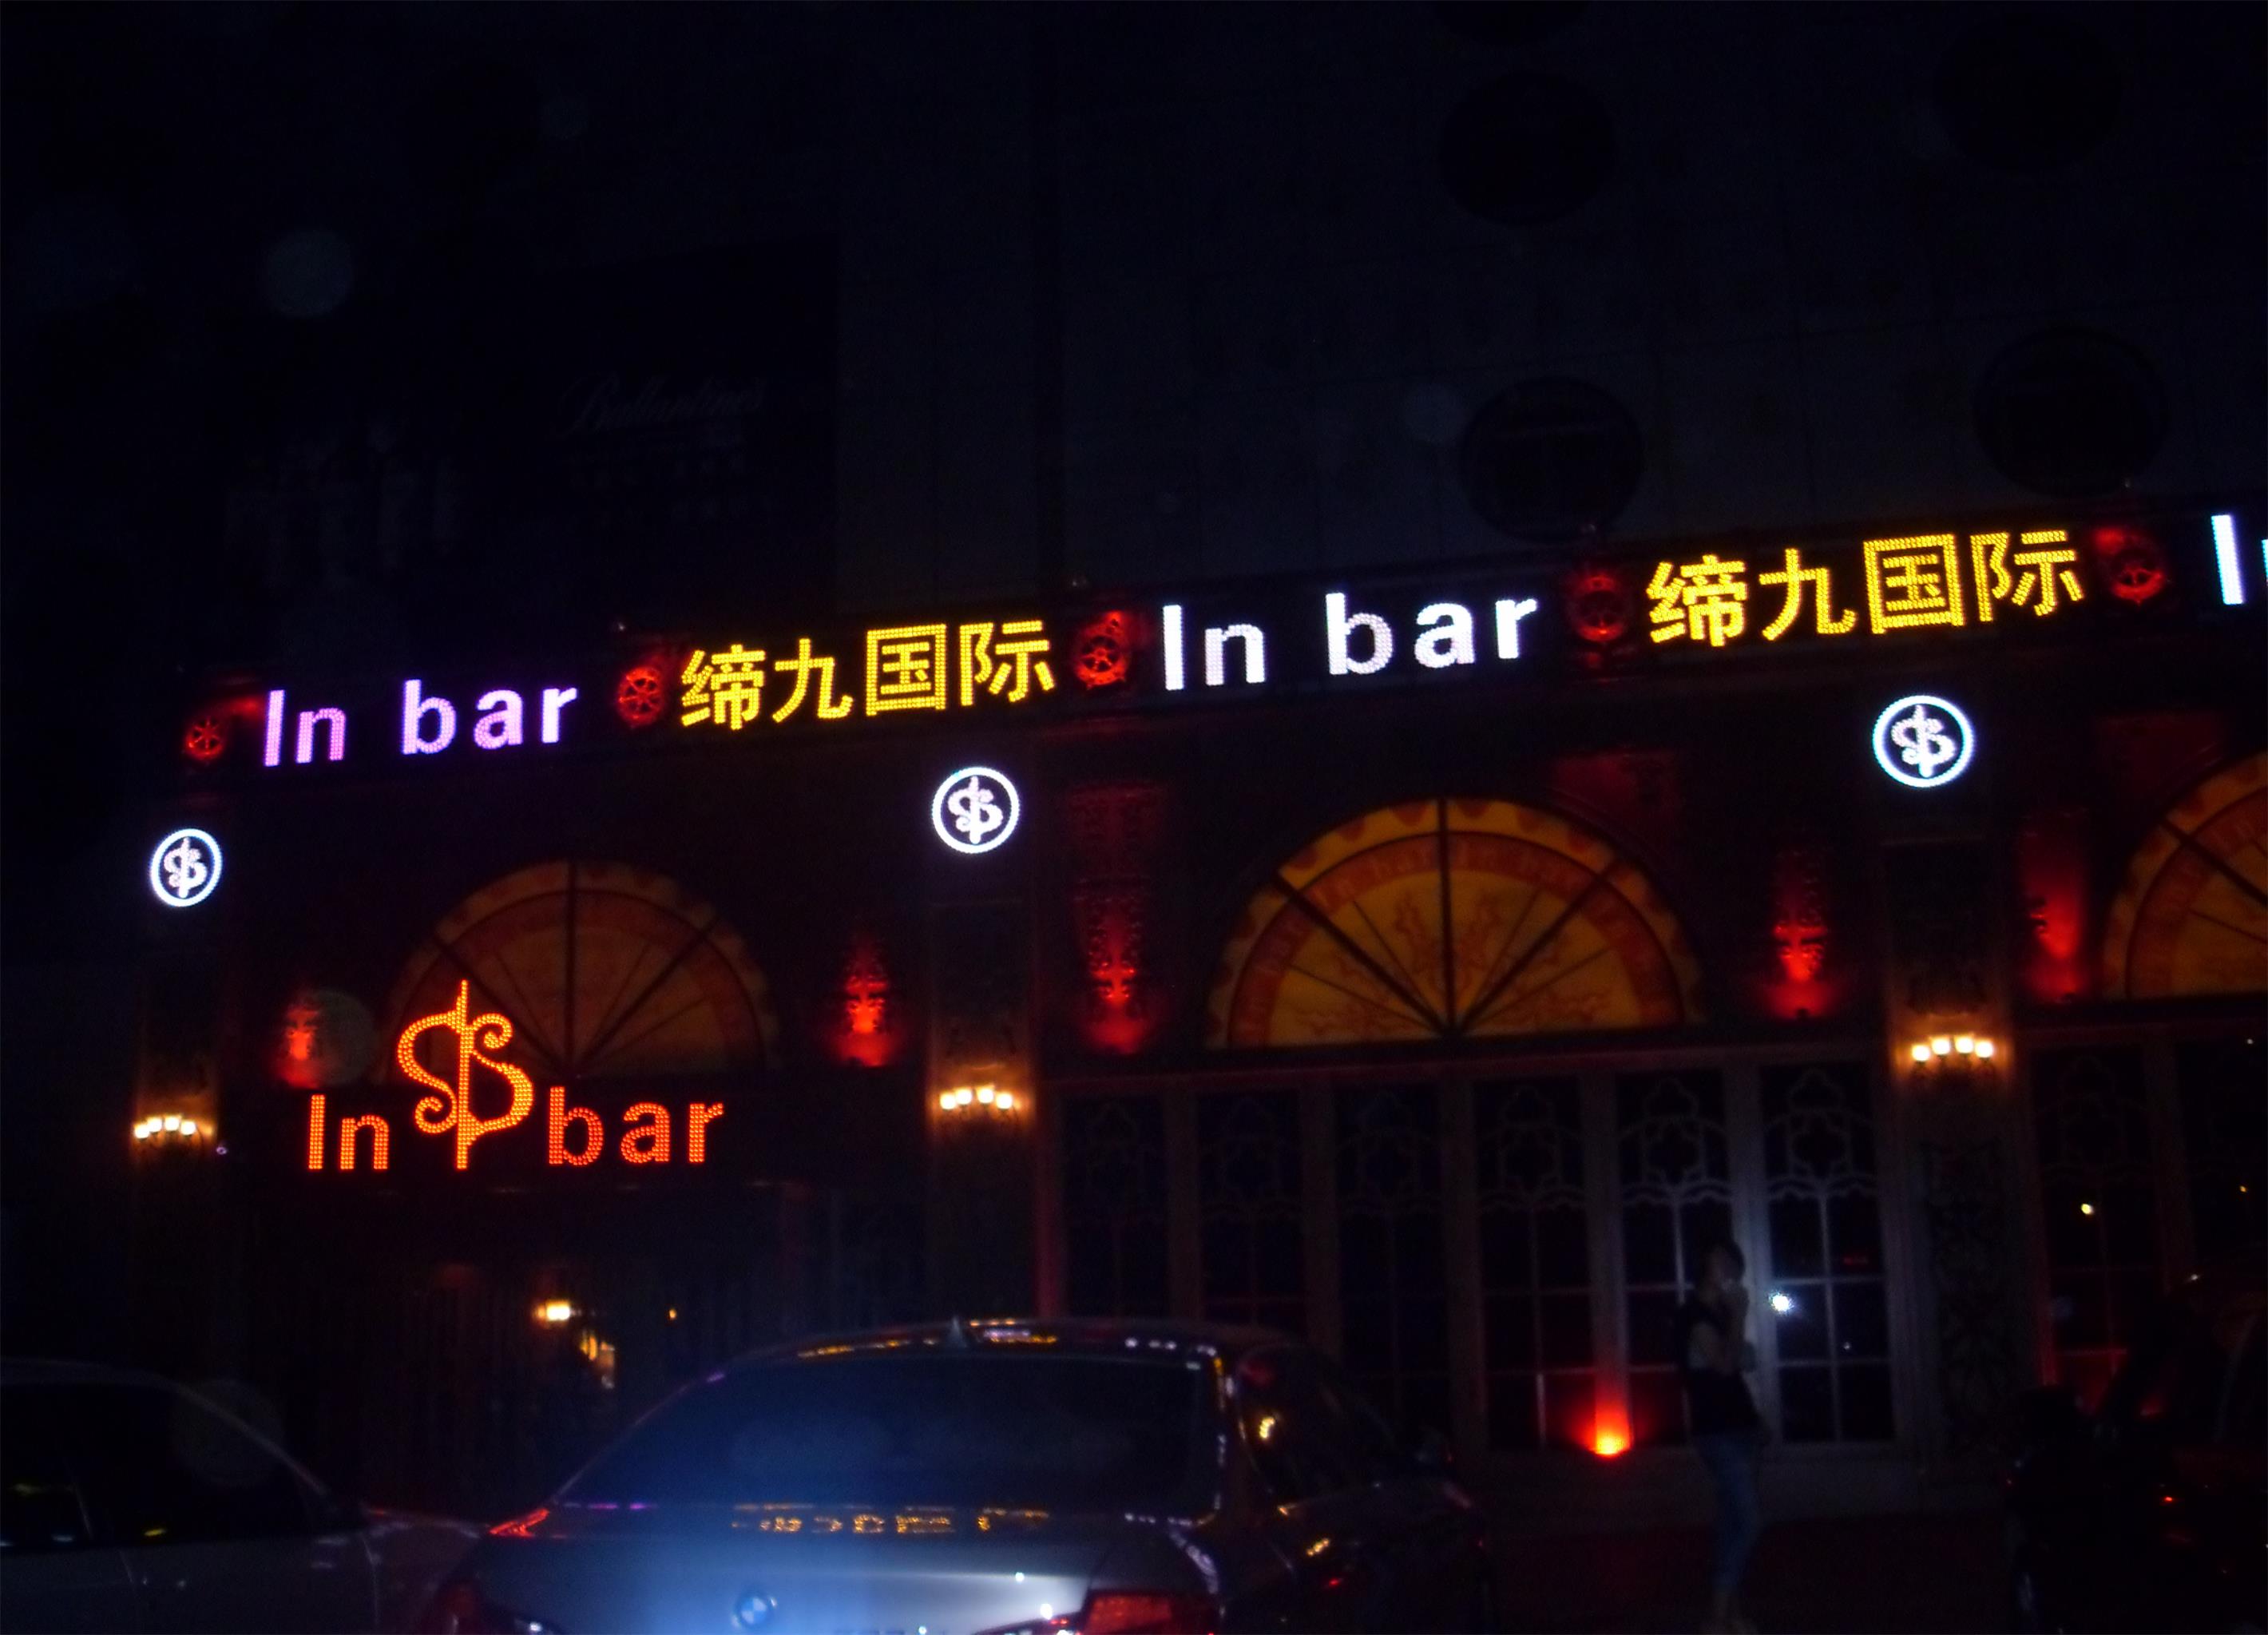 2009年哈尔滨会展缔九国际酒吧液晶拼接系统